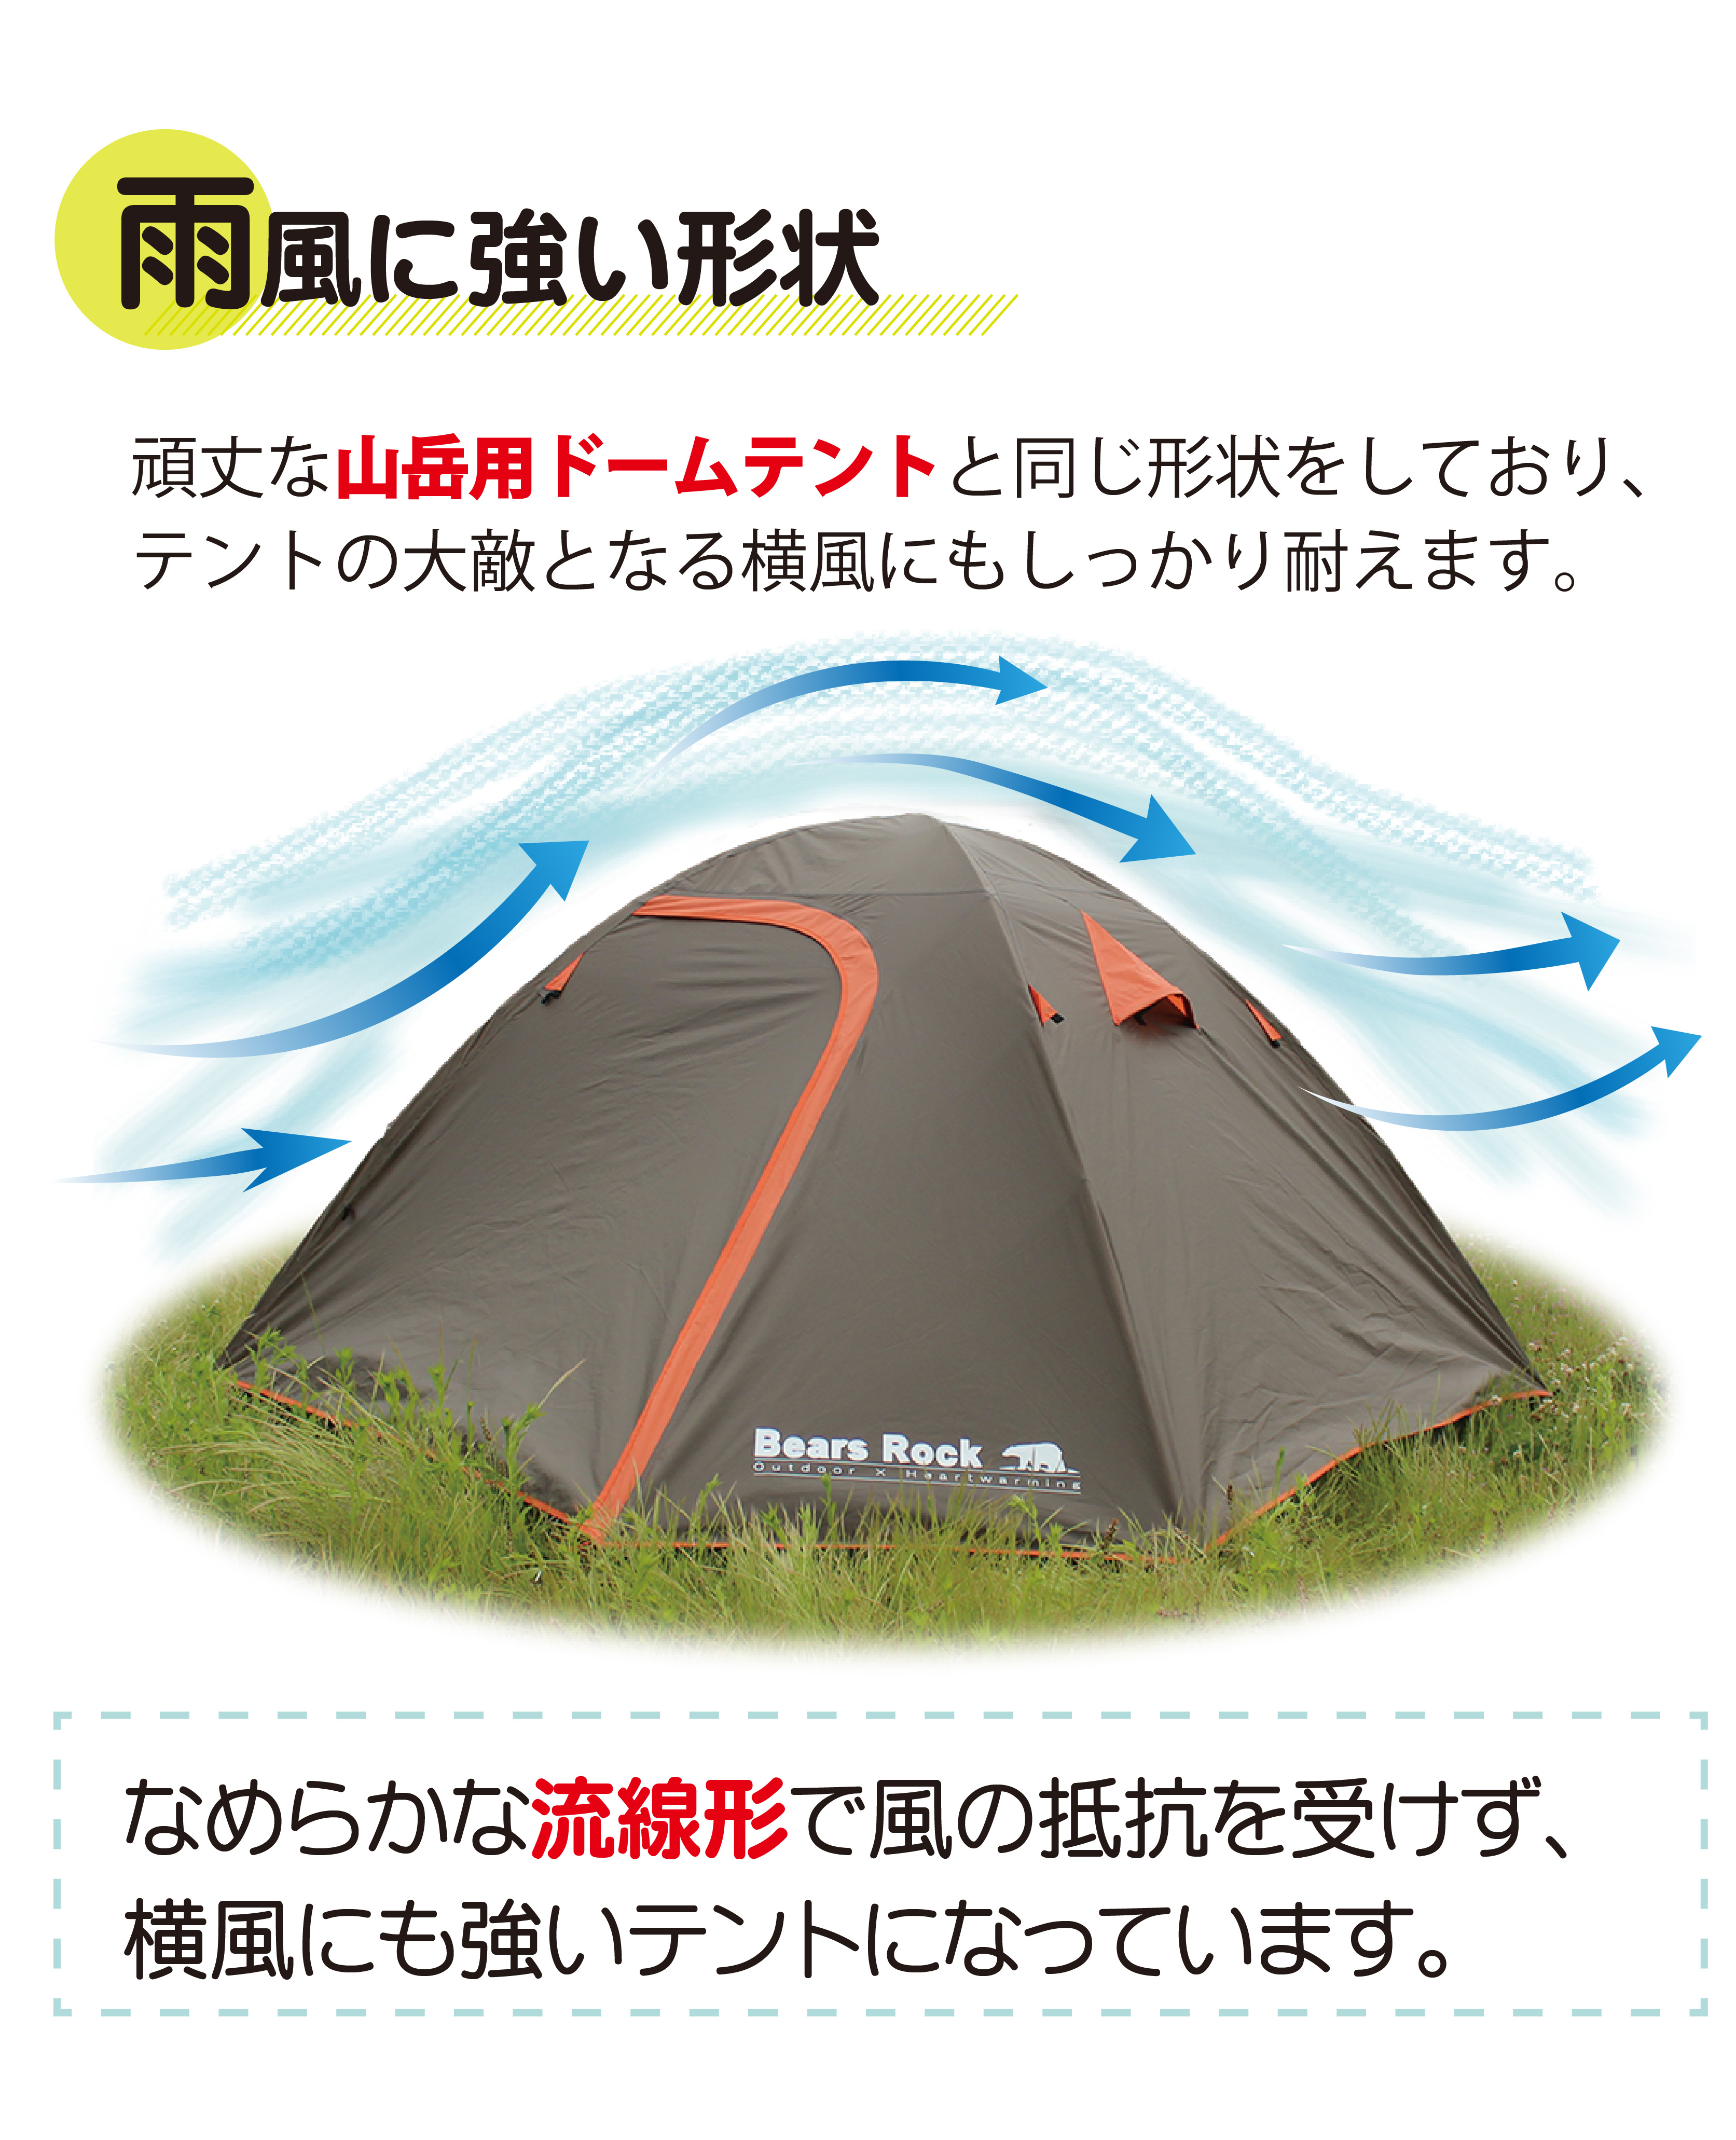 頑丈な山岳用ドームテントと同じなめらかな流線形で雨だけでなく横風にも強い